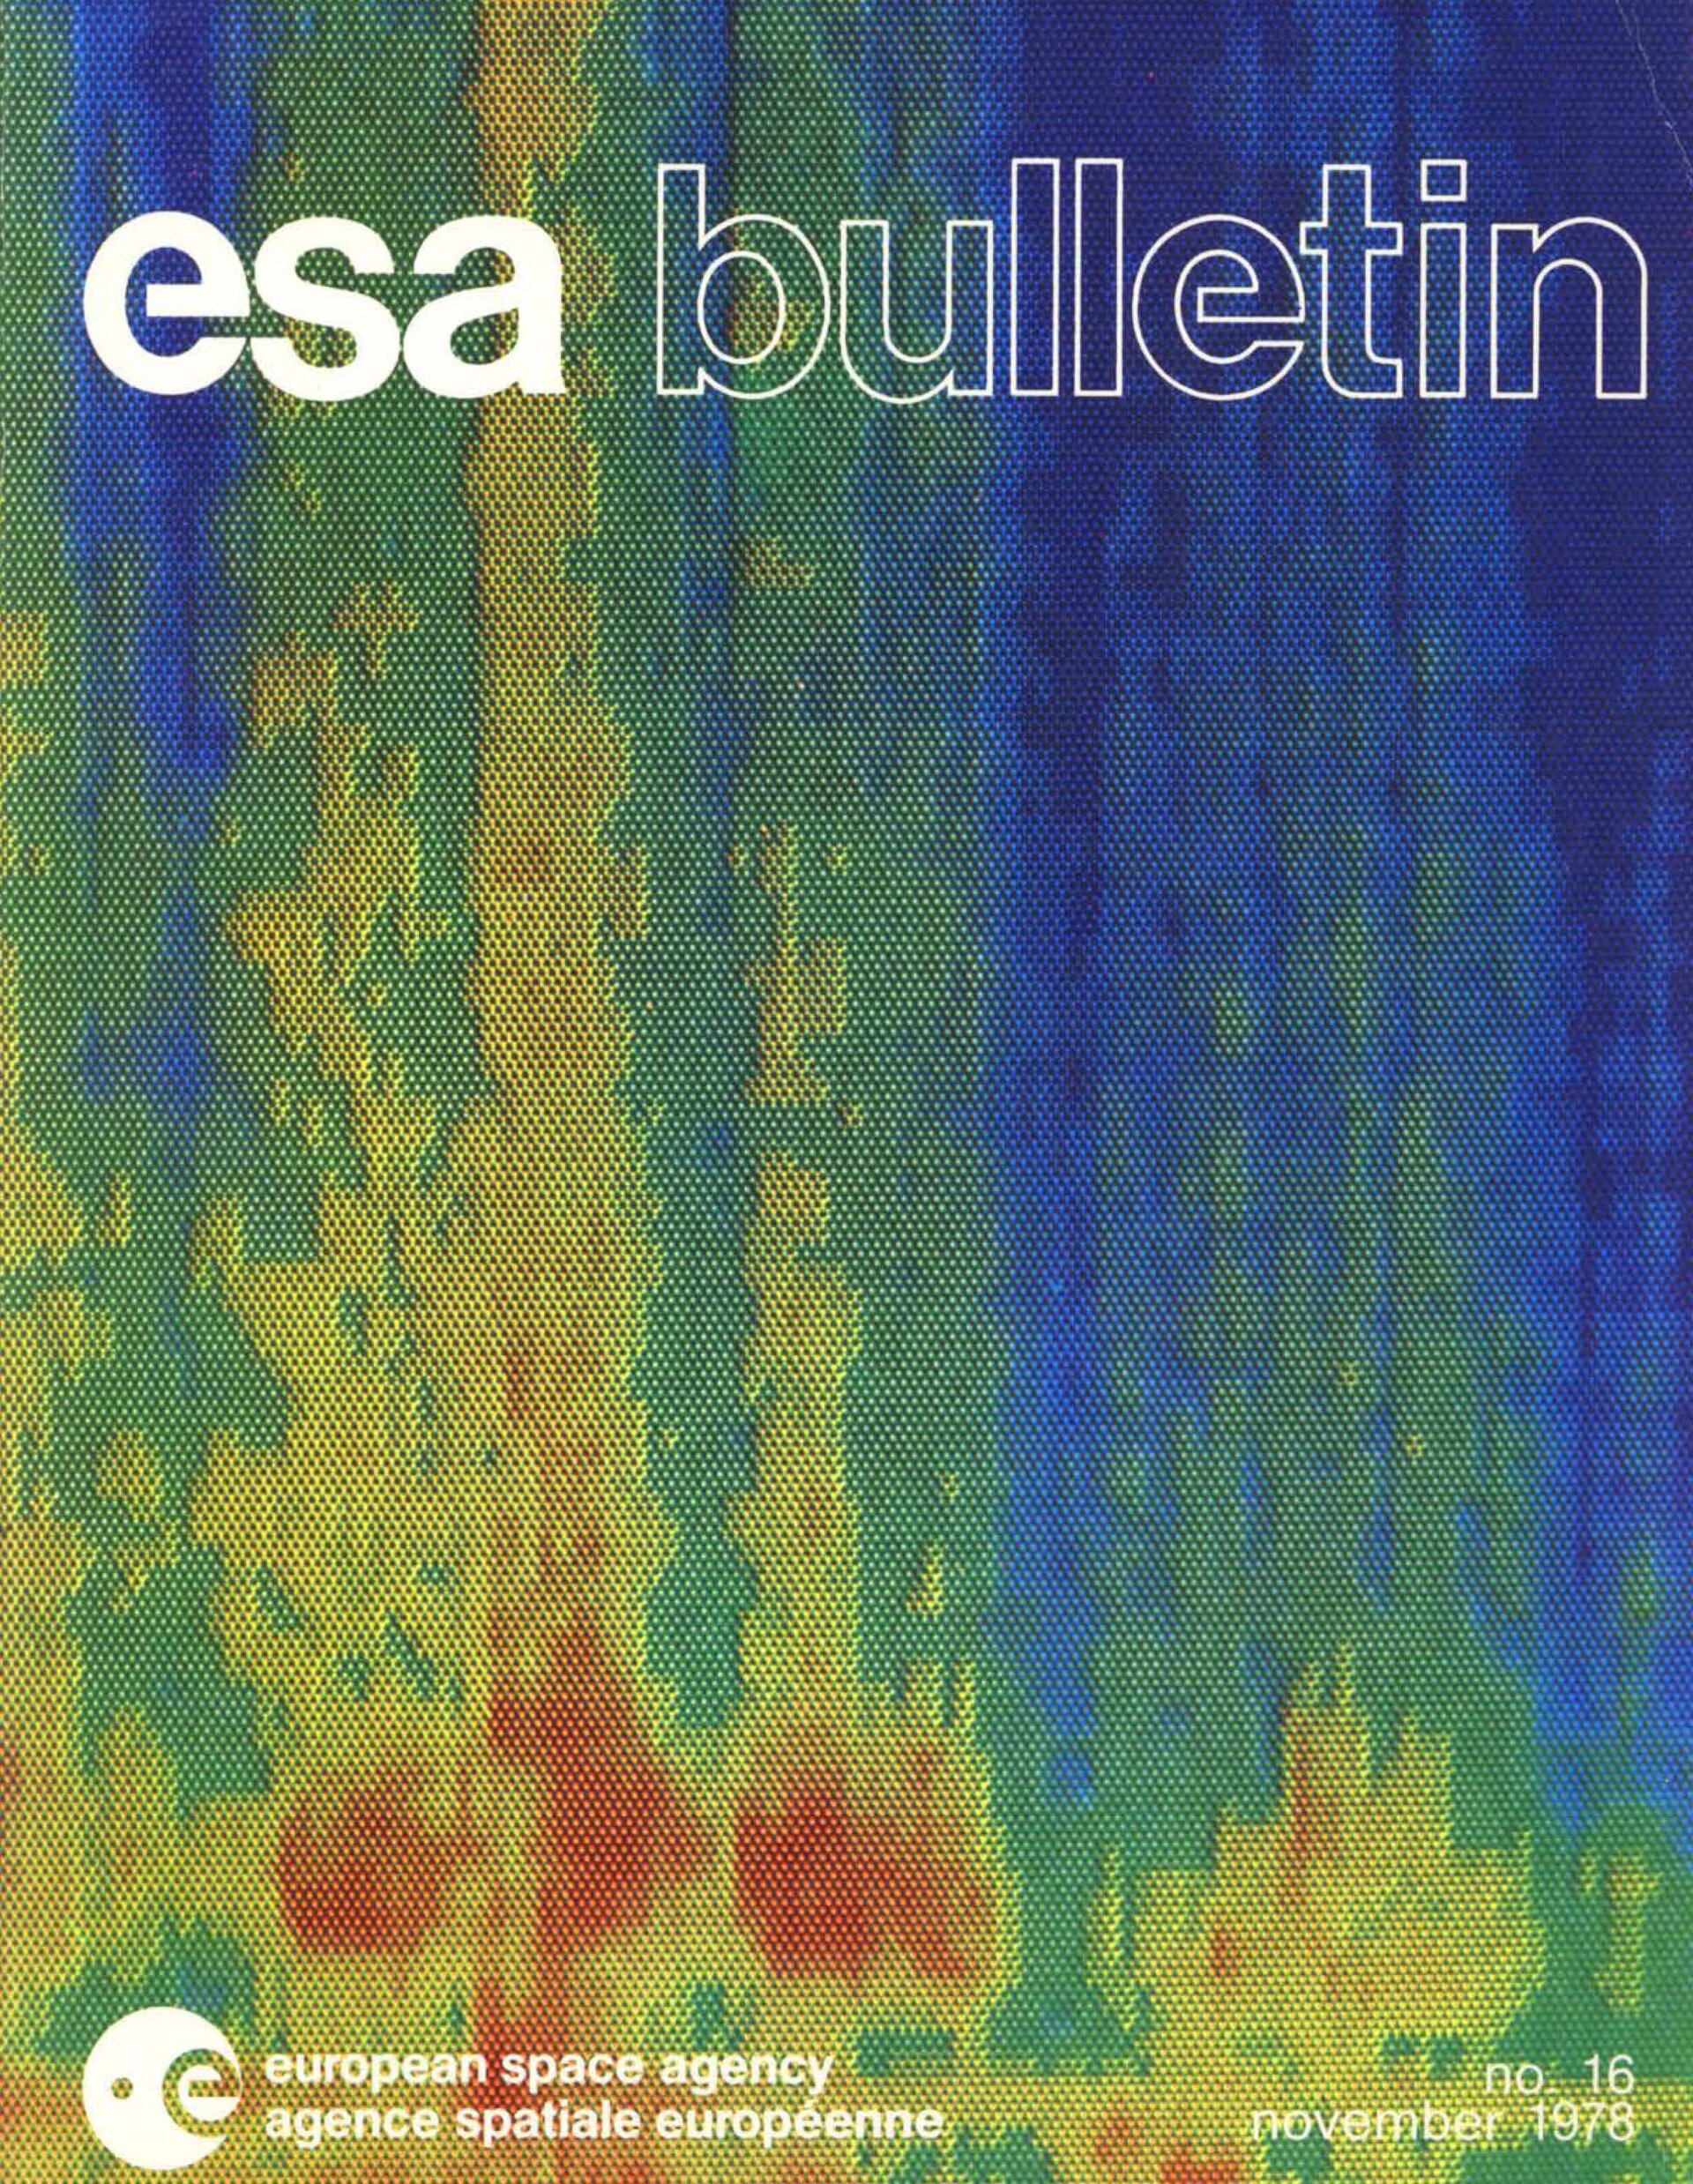 Bulletin 16 cover